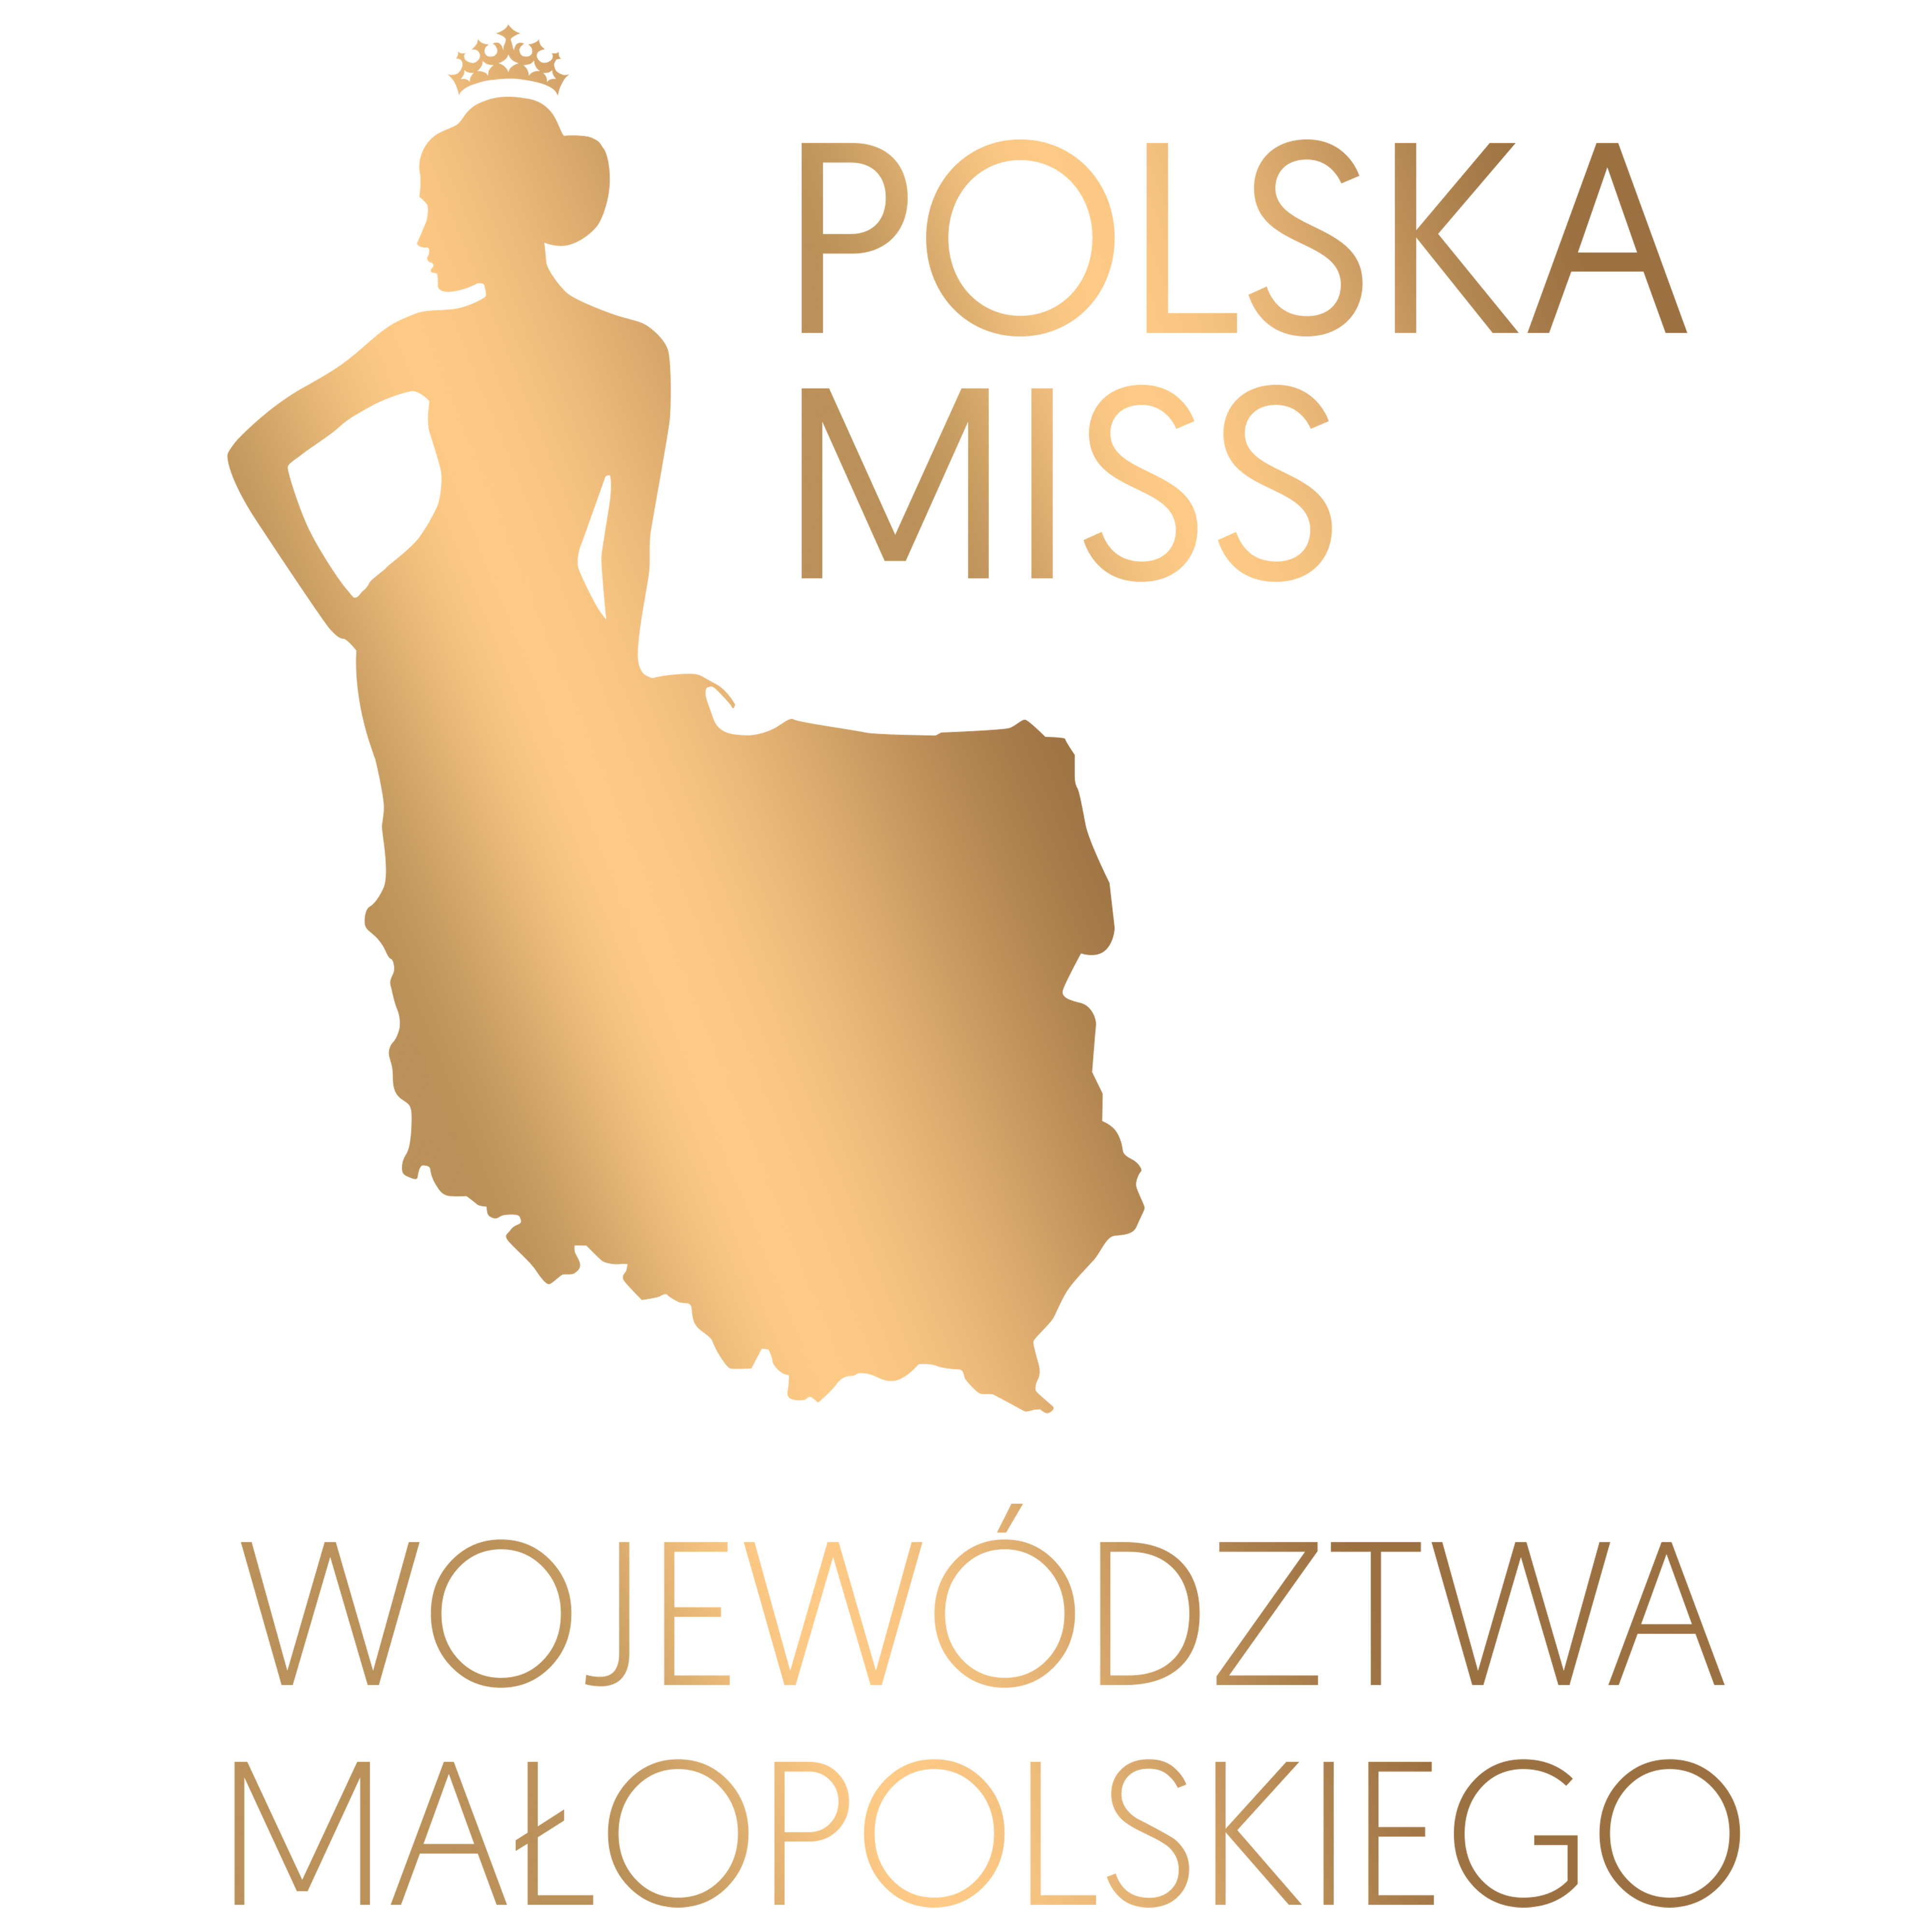 Miss Małopolski